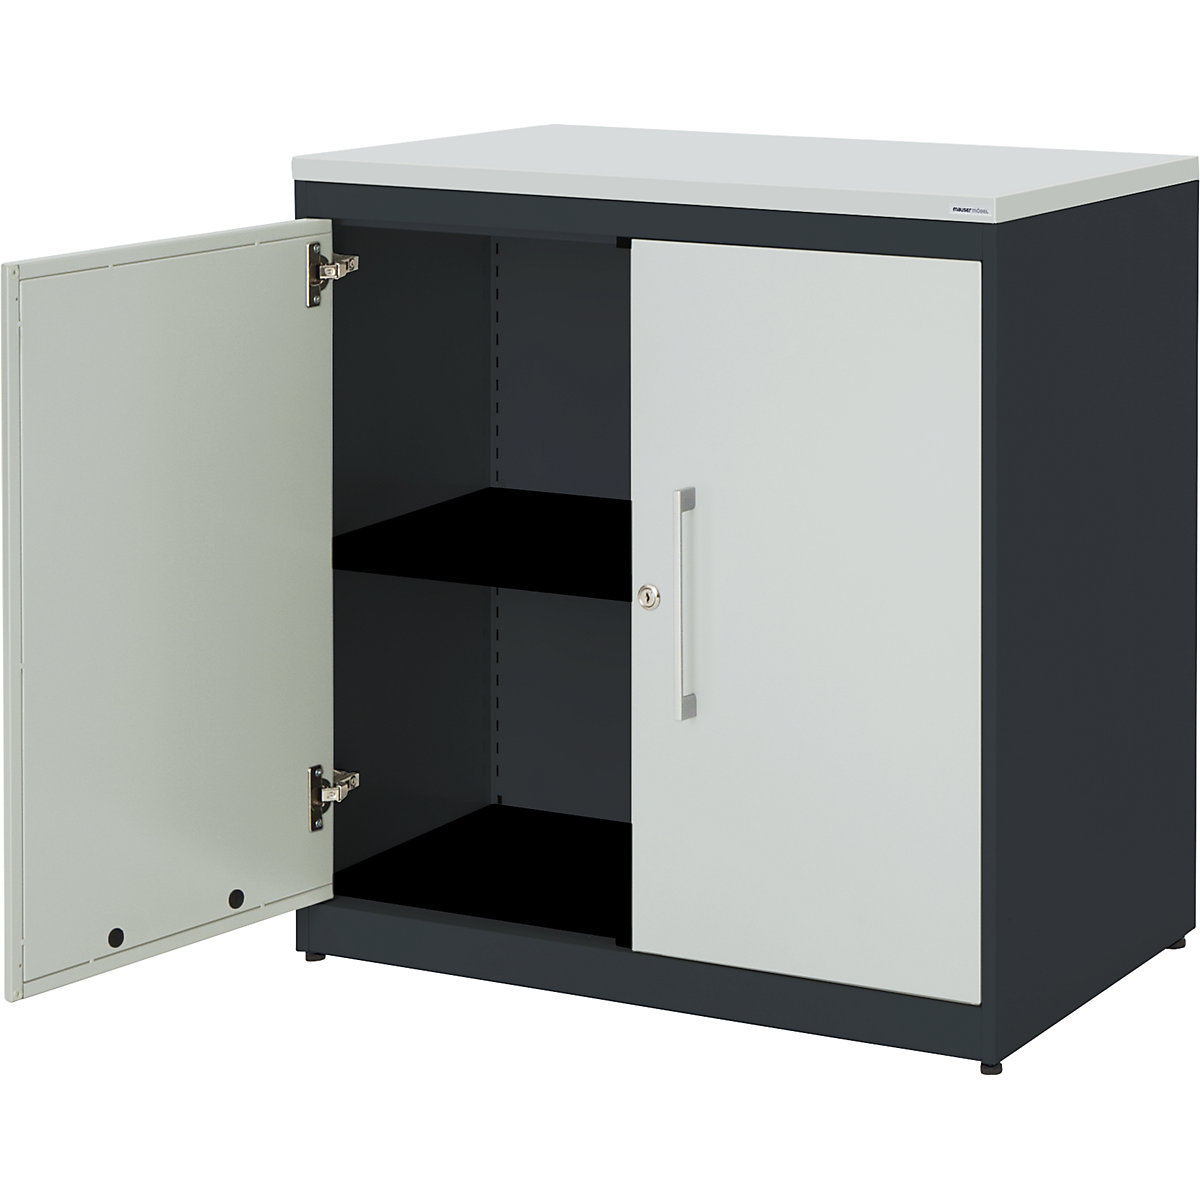 Szárnyasajtós szekrény – mauser, ma x szé 830 x 800 mm, műanyag lap, 1 polc, antracitszürke / világosszürke / világosszürke-4